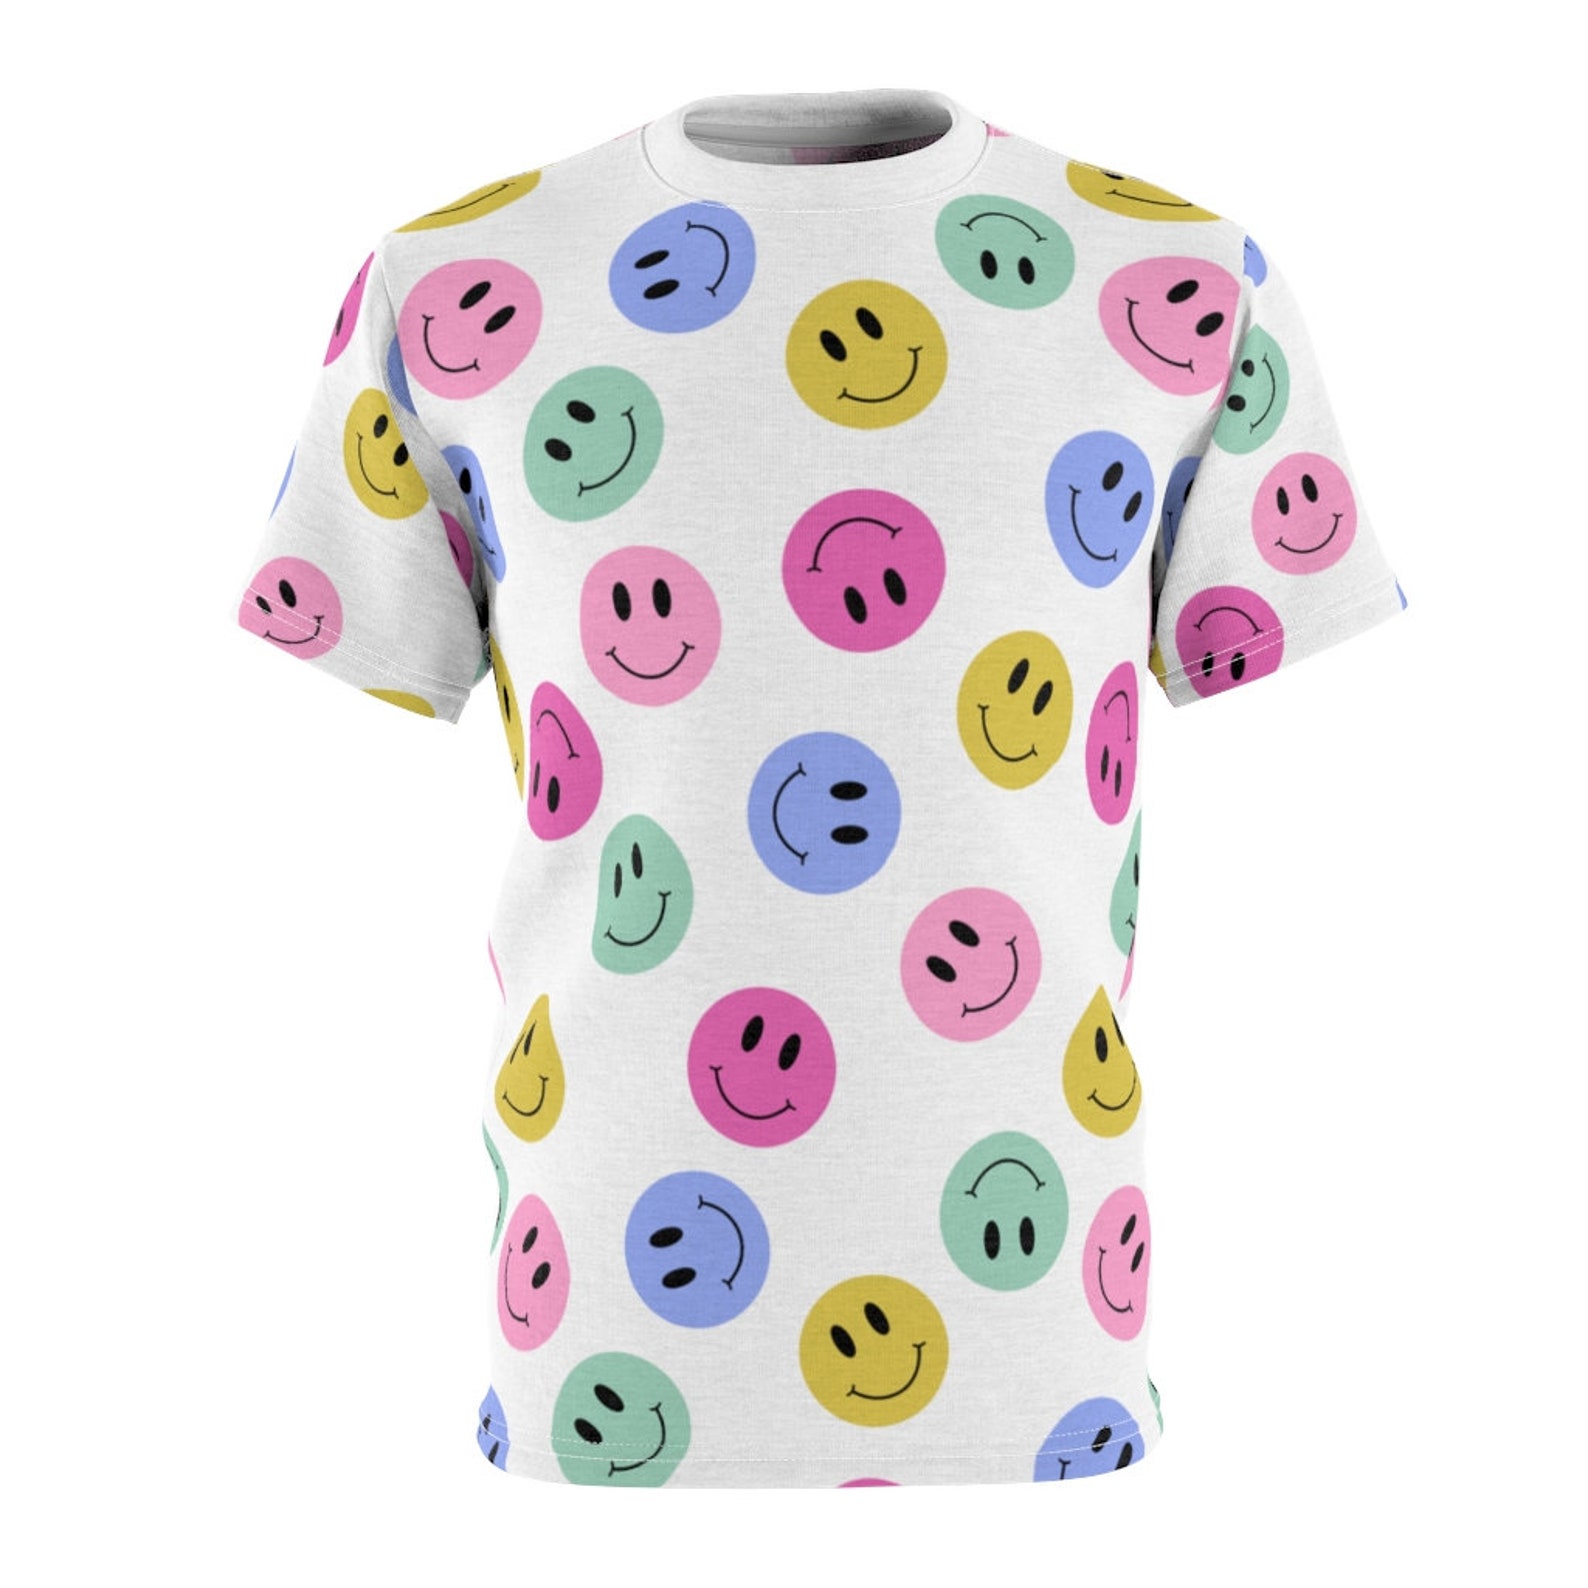 Smiley Unisex Shirt retro smiley tee smilies shirt smiley | Etsy